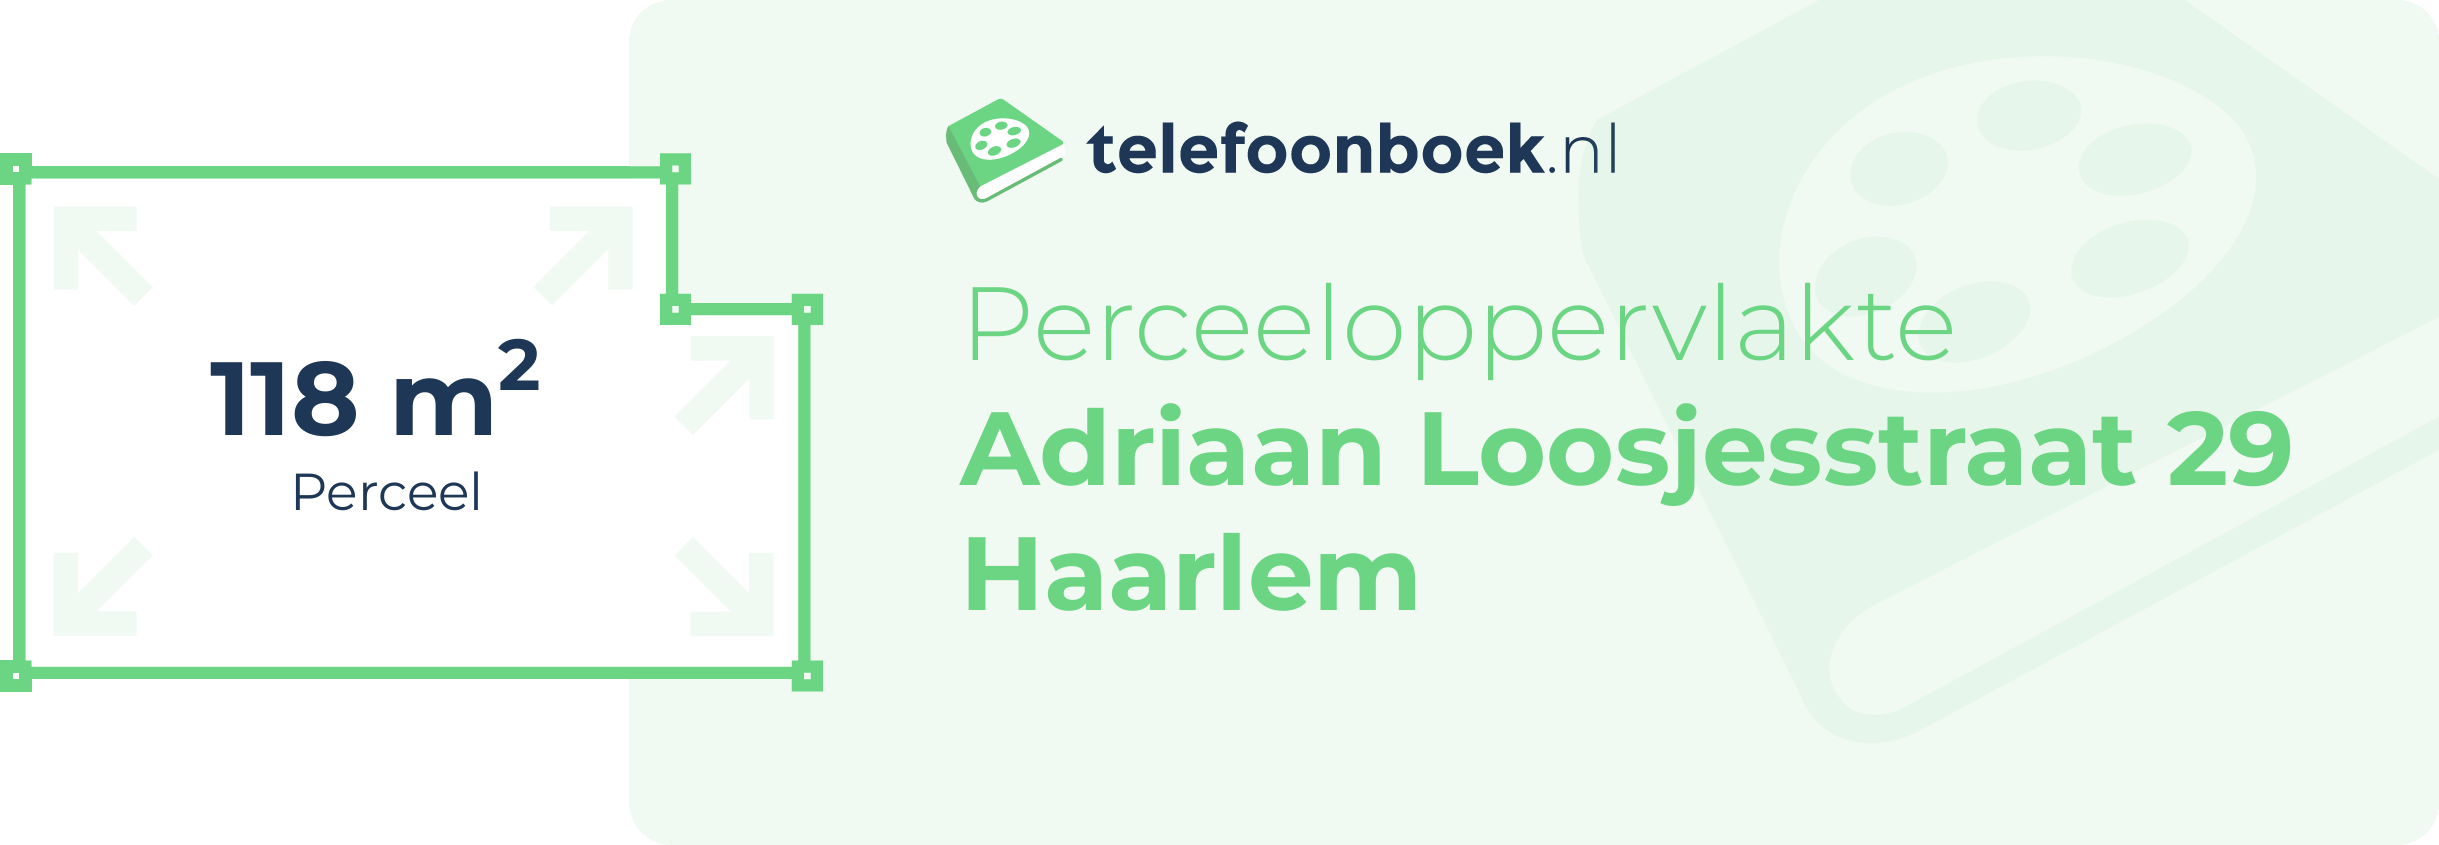 Perceeloppervlakte Adriaan Loosjesstraat 29 Haarlem